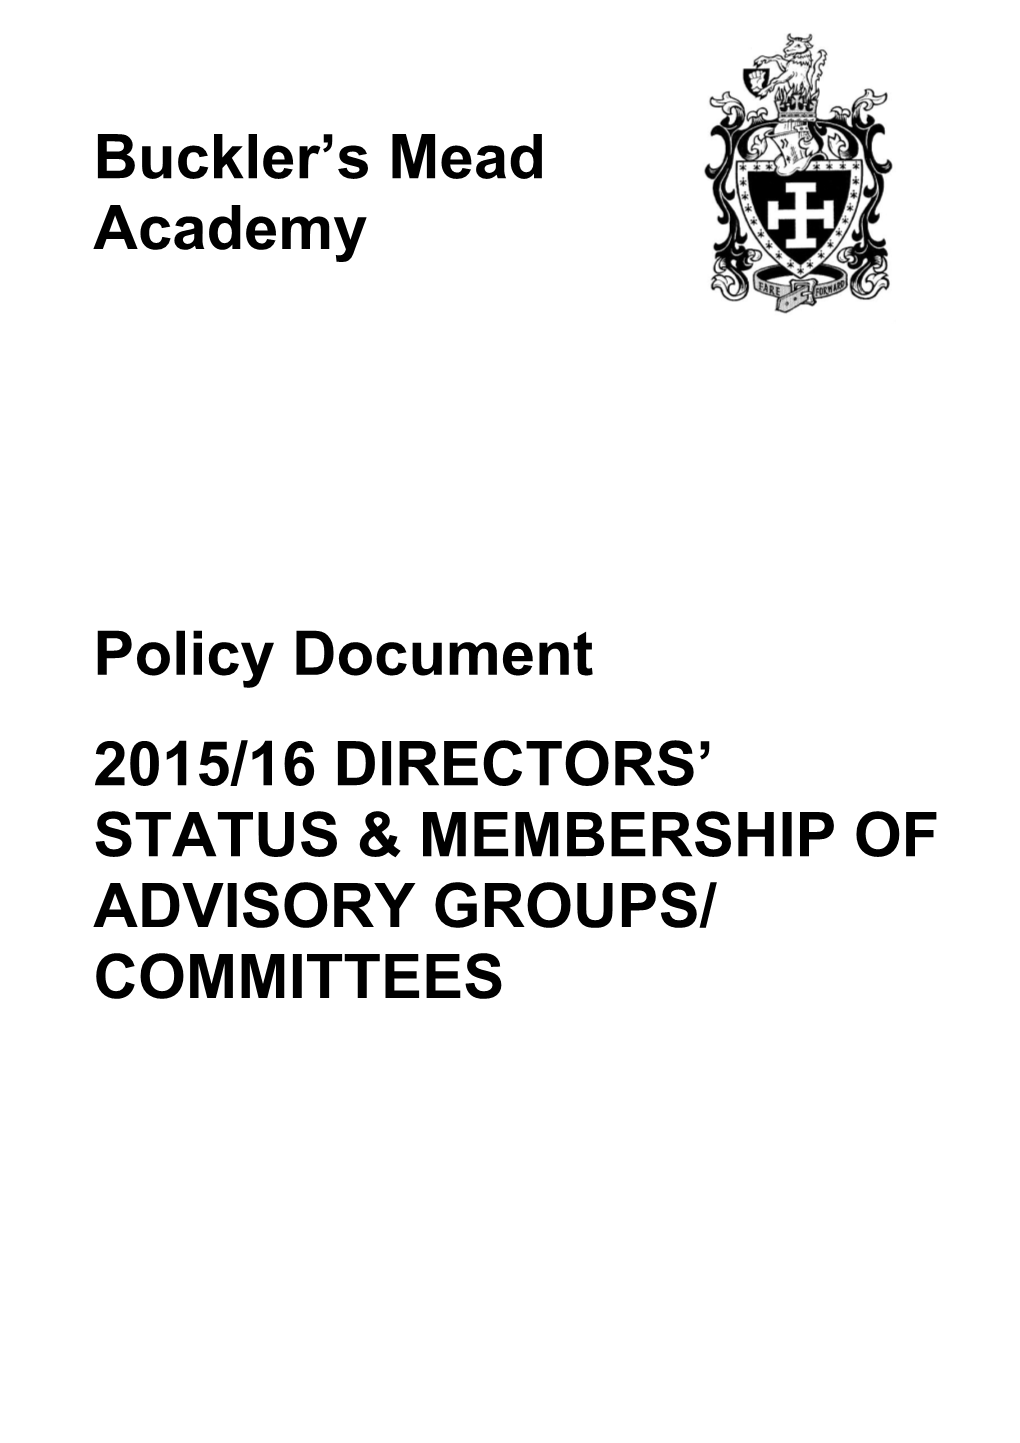 2015/16 Directors Status & Membership of Advisory Groups/ Committees